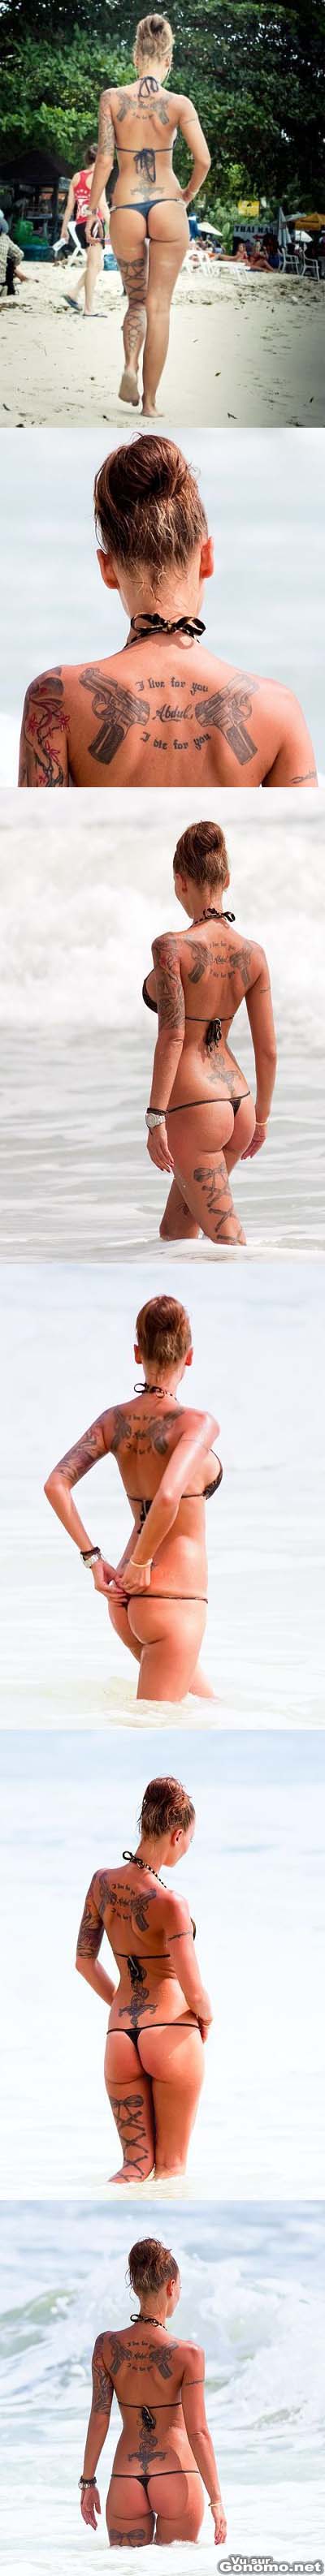 Femme tatouee : sympathique cette brune tatouee avec son bikini qui lui rentre dans les fesses